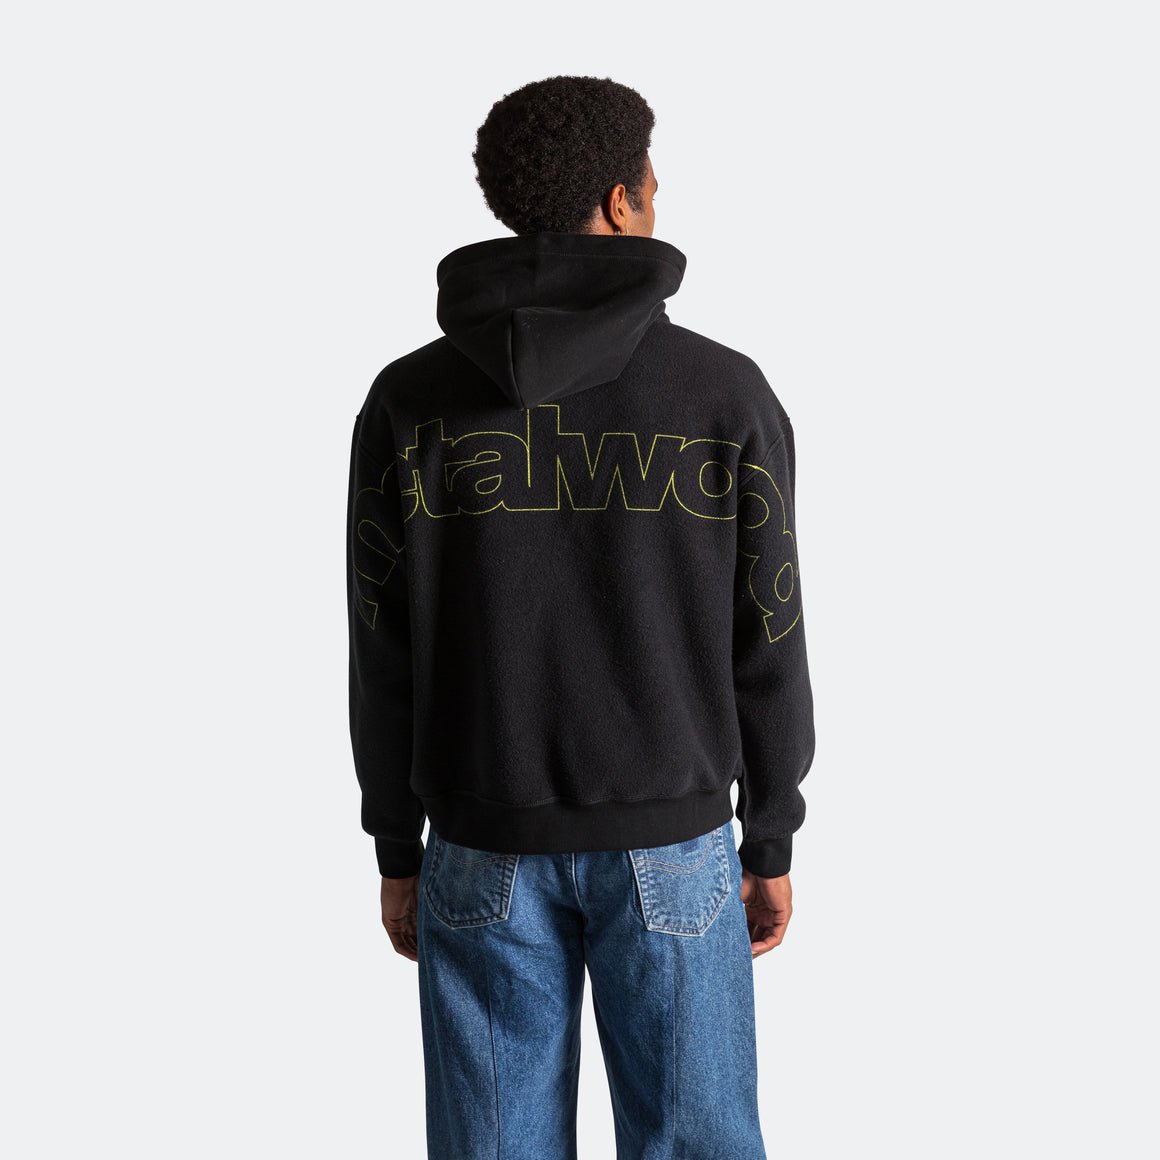 Reverse Twinkle Hooded Sweatshirt - Black